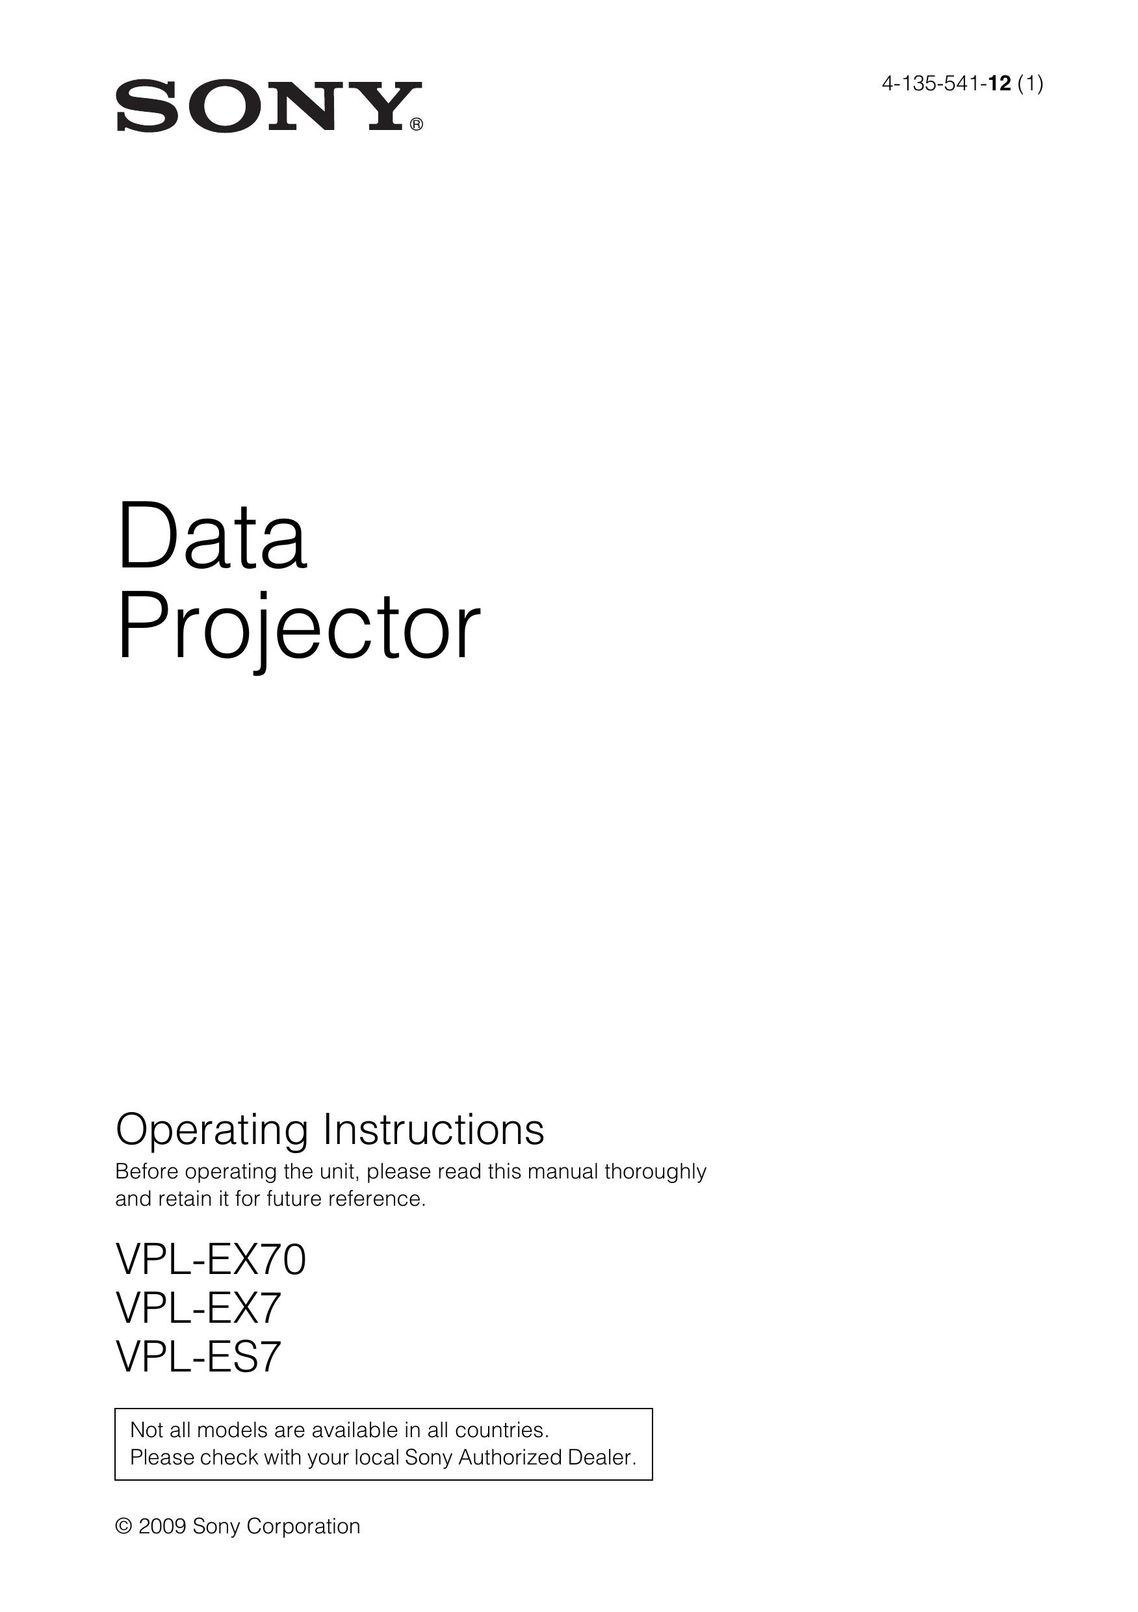 Sony ES7 Projector User Manual